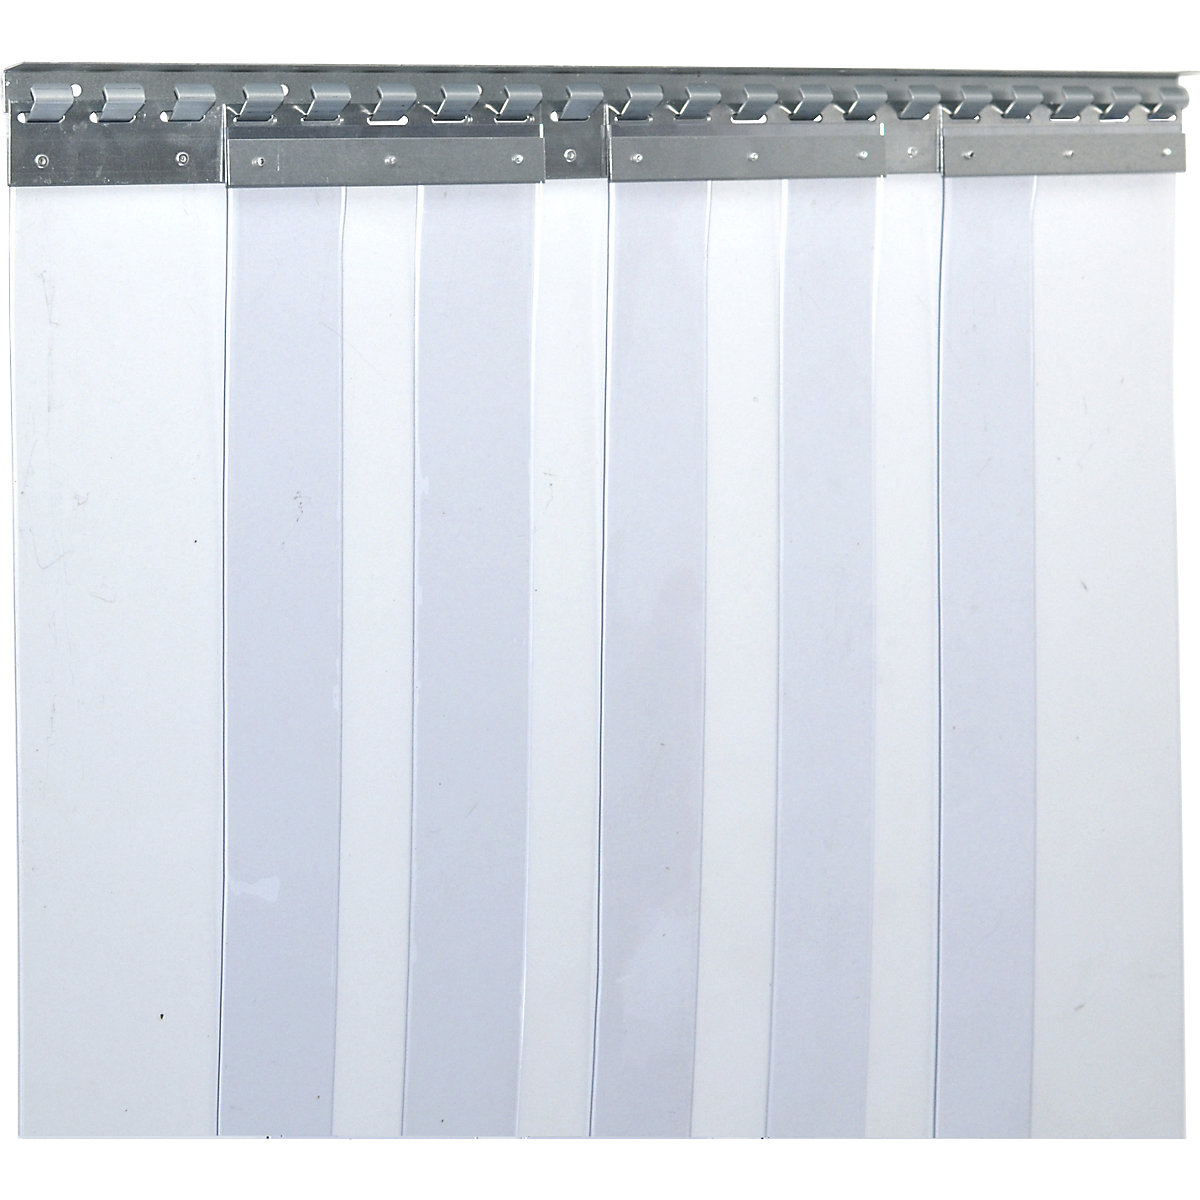 Trakasta zavesa, cena/m², širina x debelina 200 x 2 mm, prekrivanje 2 kljukici = 77 mm-9